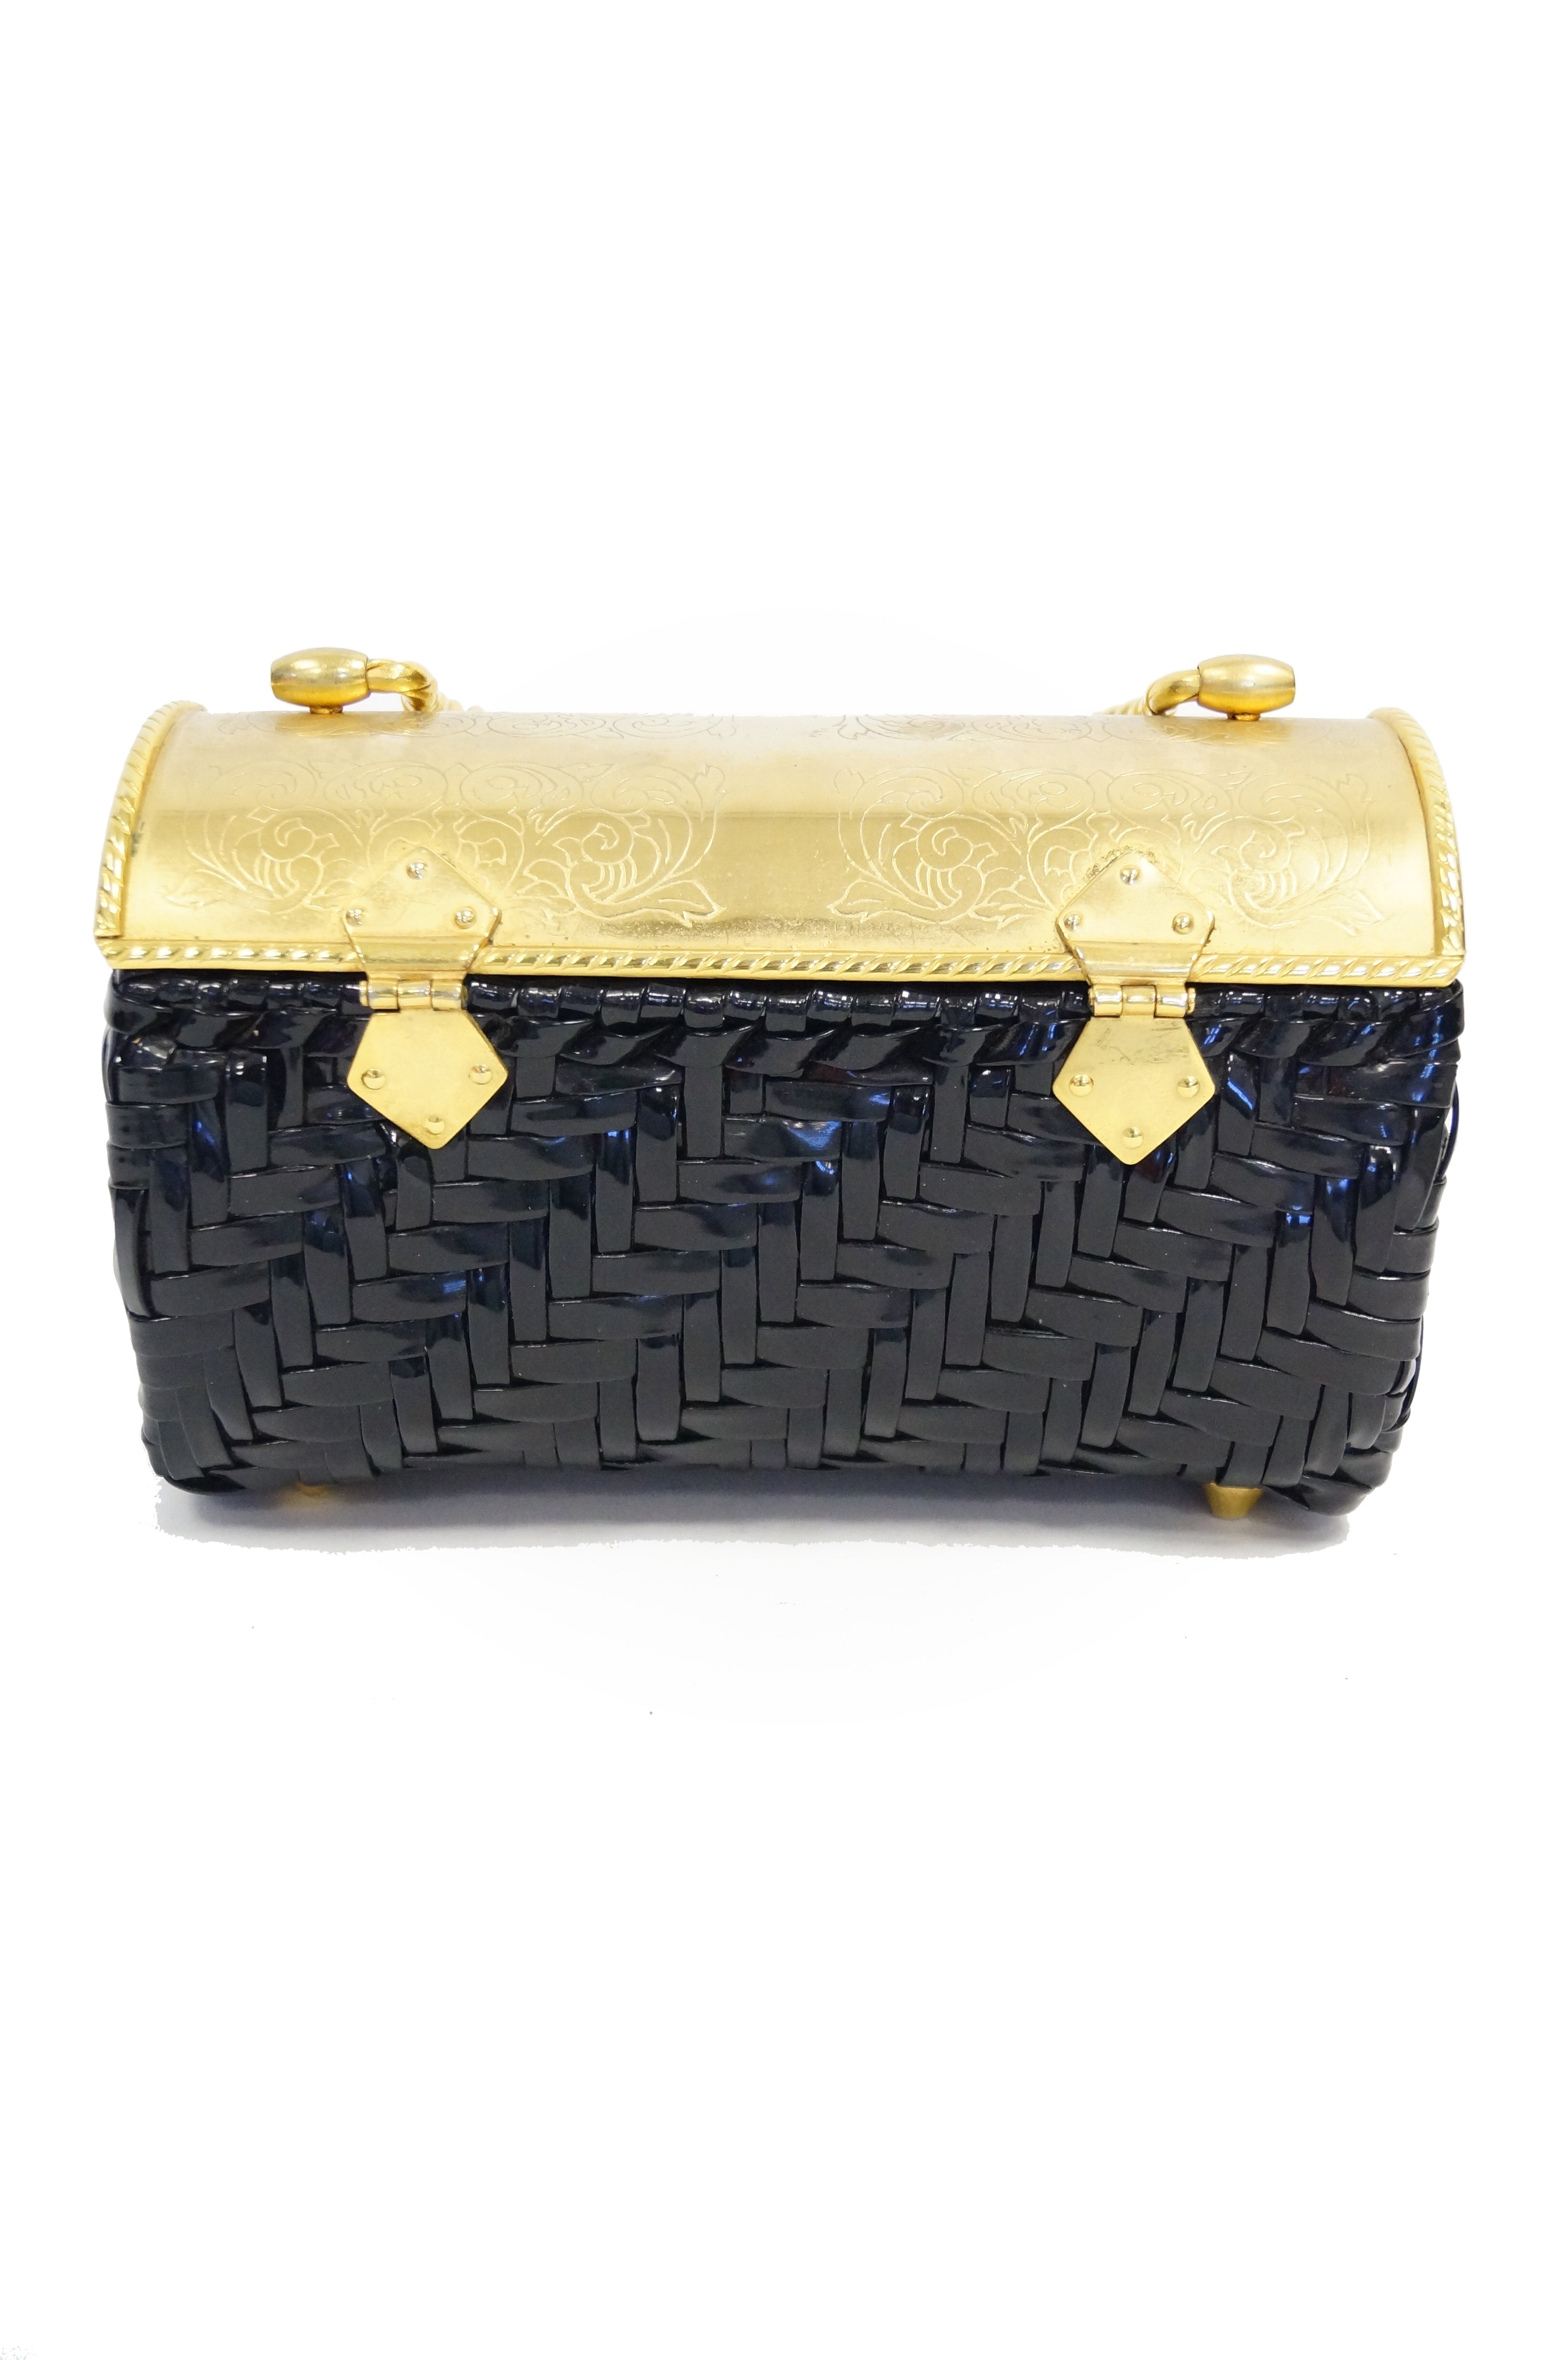 1960's Louis Vuitton Handbag $325.00 Rare